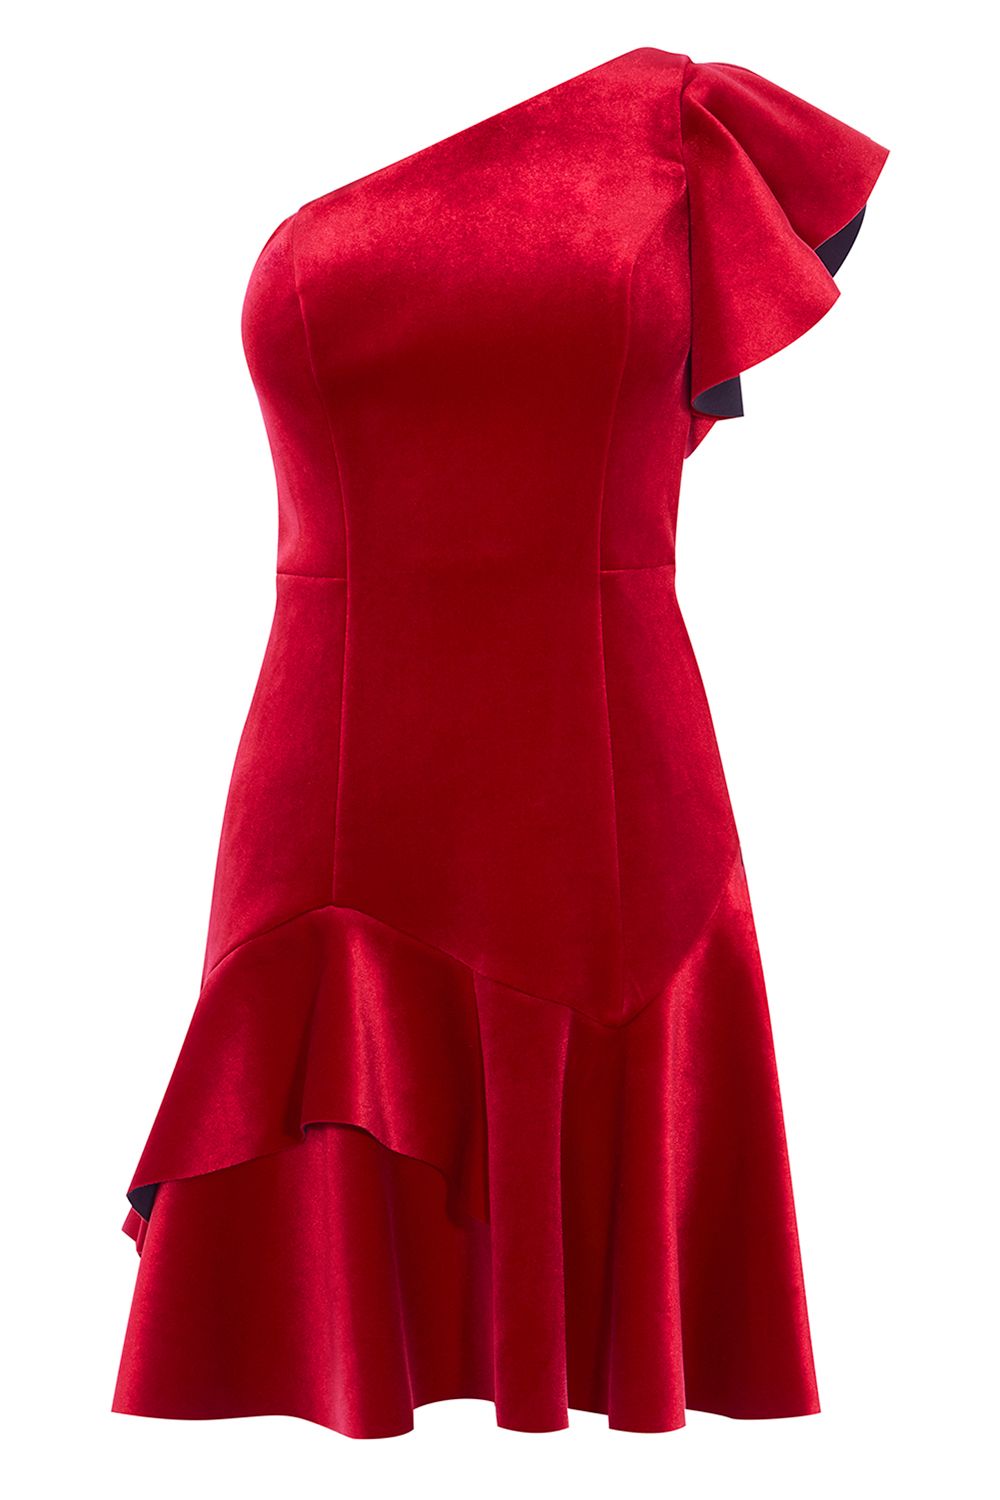 house of fraser red dress